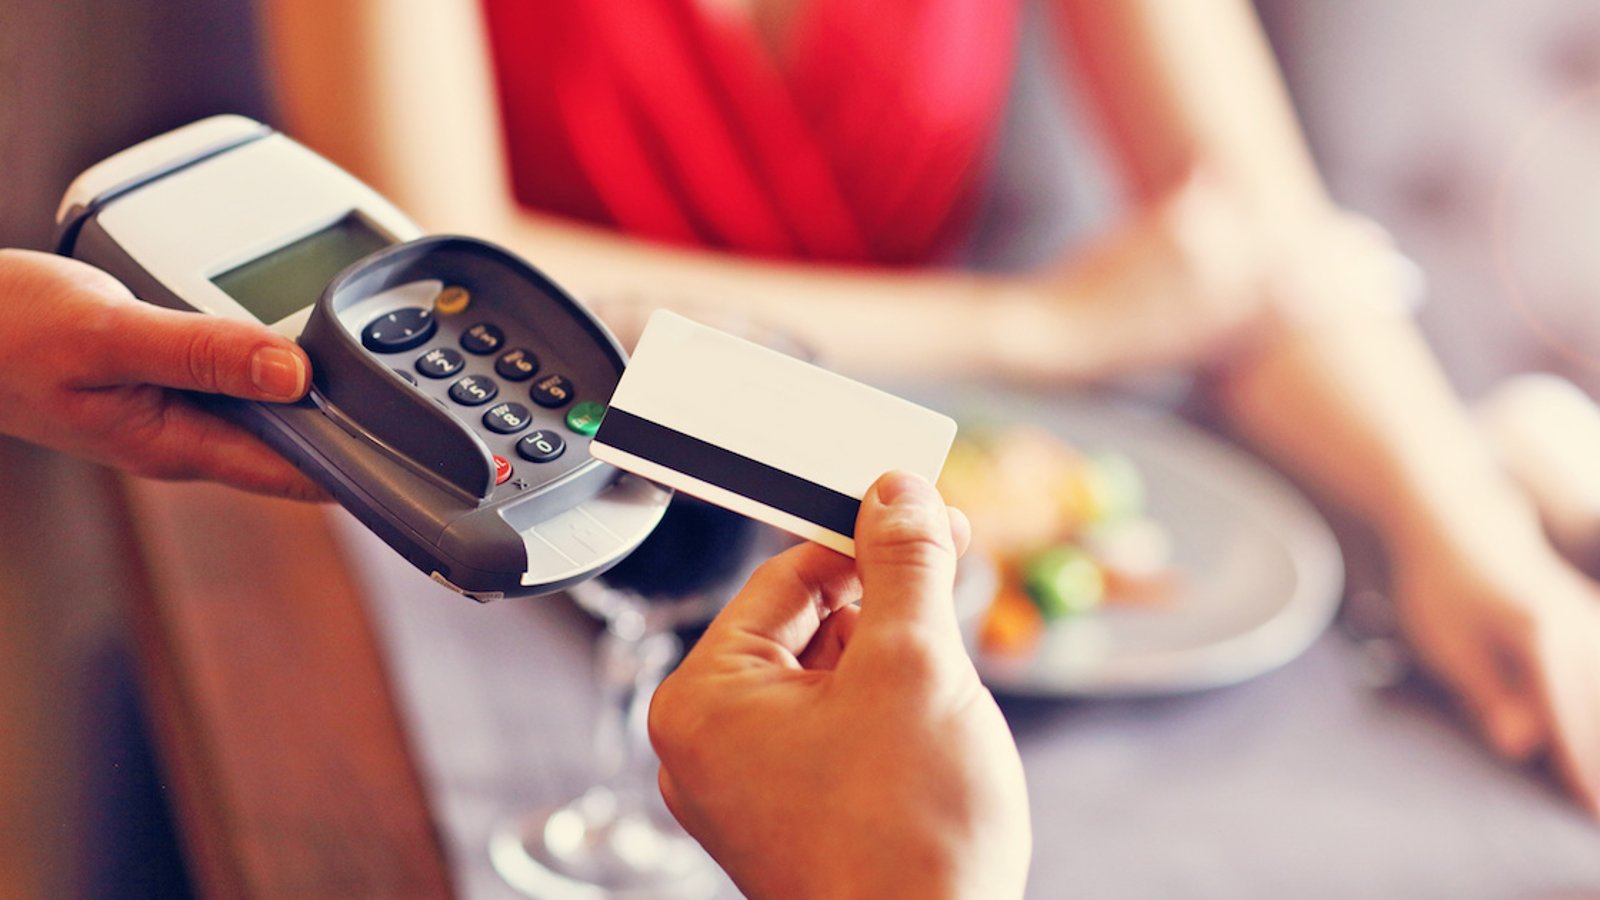 Lorsque vous laissez un pourboire par carte de crédit ou de débit, vous payez probablement plus de 15% de la facture